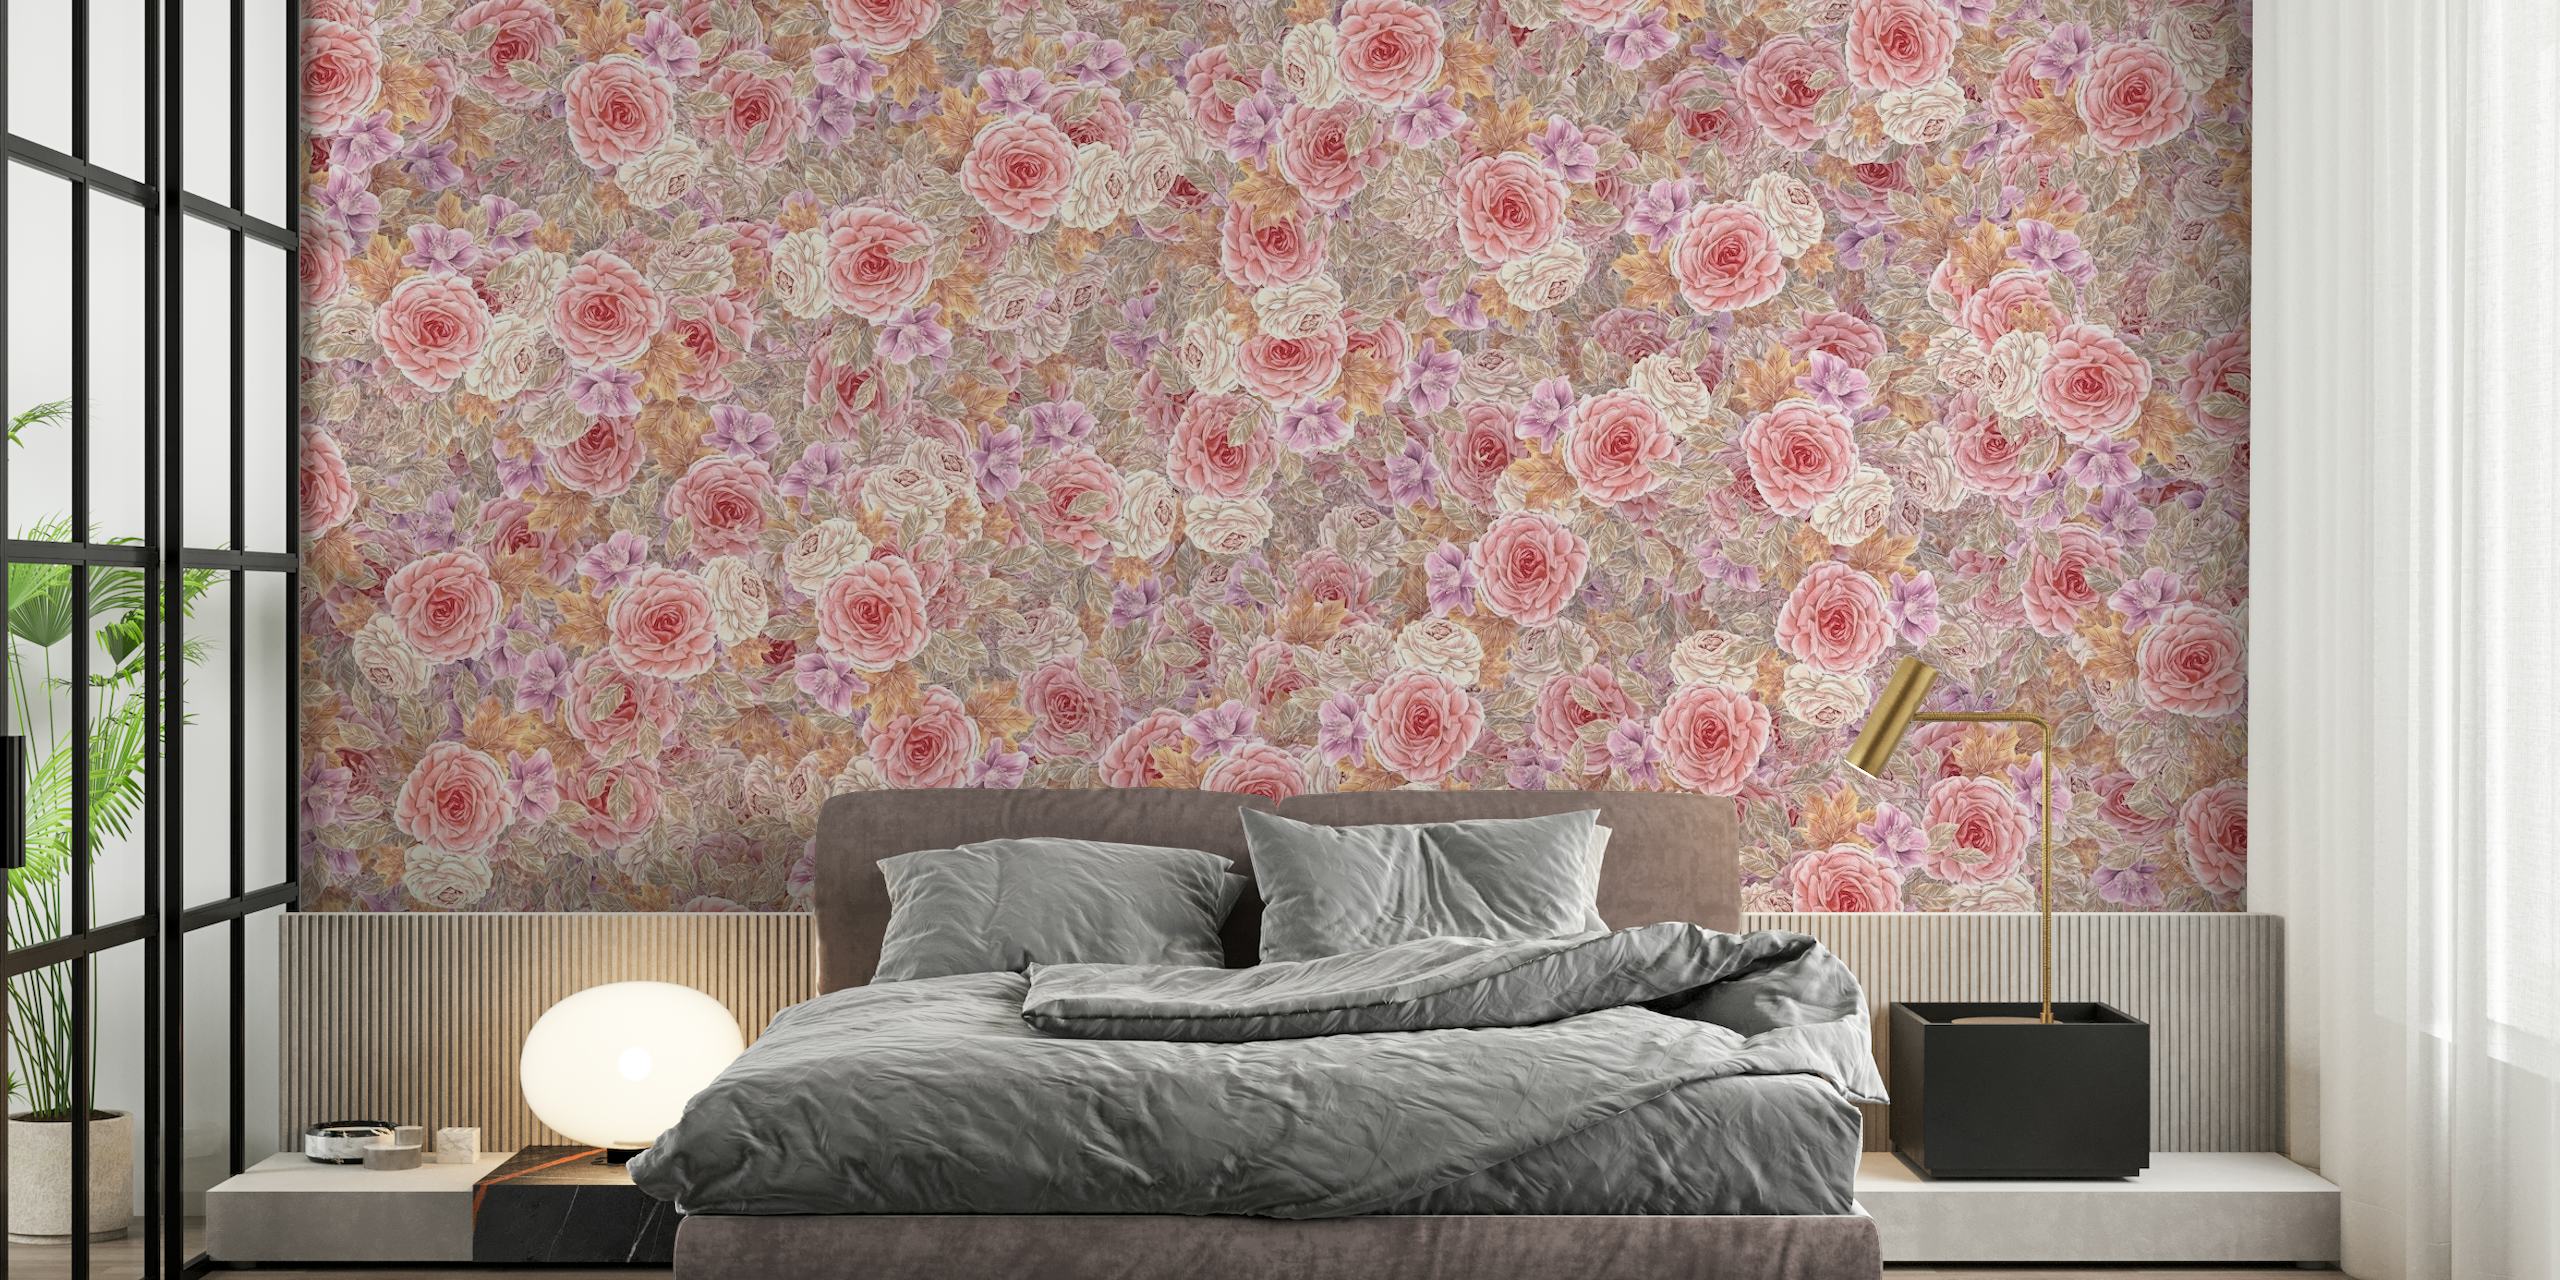 Rose tea acquerellate in rosa, arancione, lilla e tortora su un murale